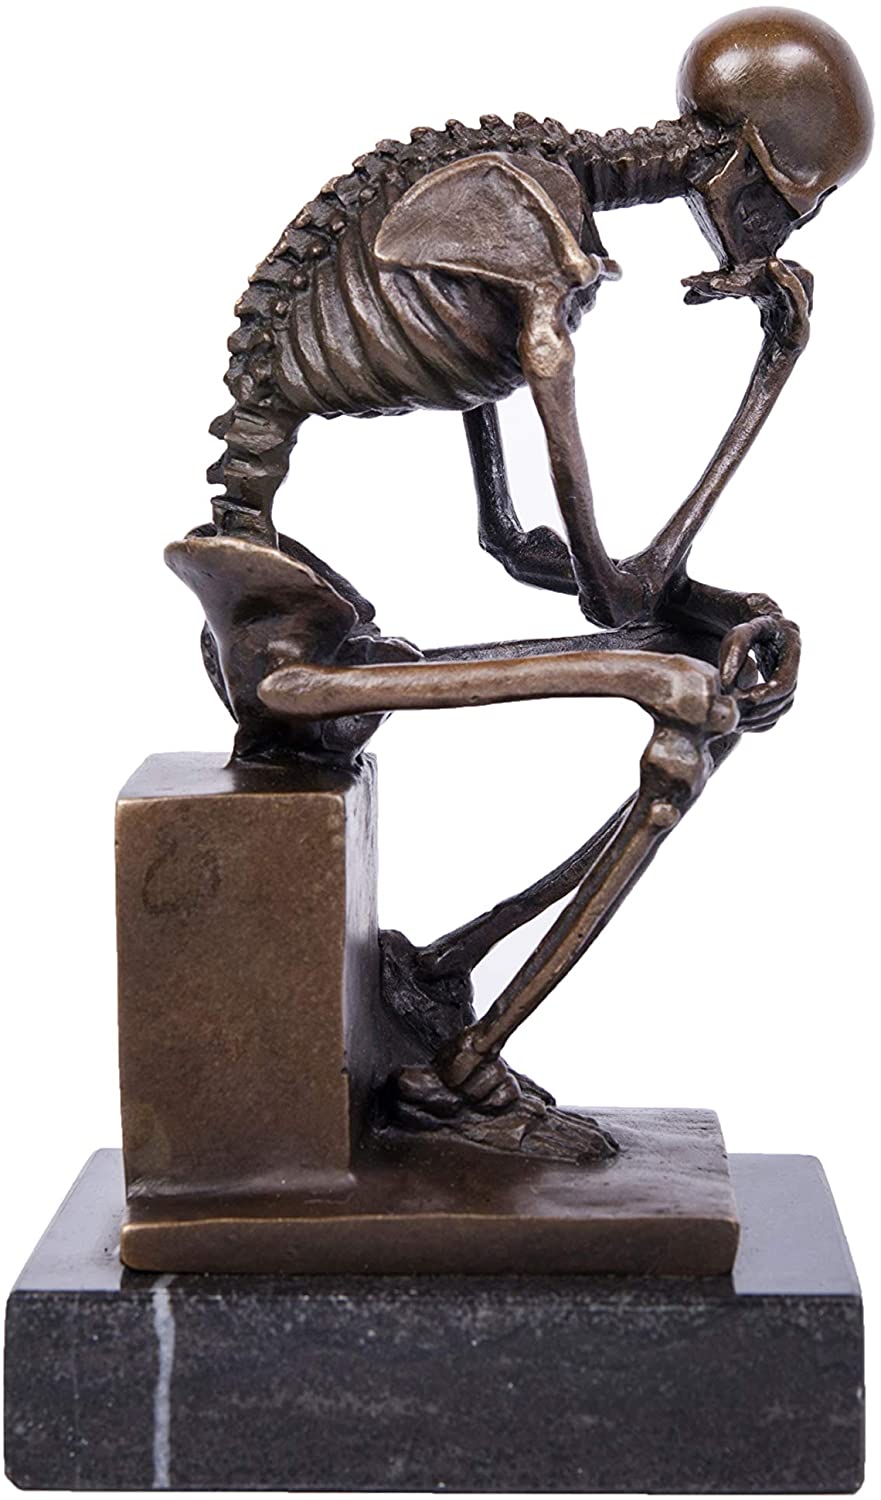 純ブロンズ製 スケルトン シンカー 考える骸骨ブロンズ像 彫像 ホーム装飾彫刻 手工芸品 贈り物(輸入品